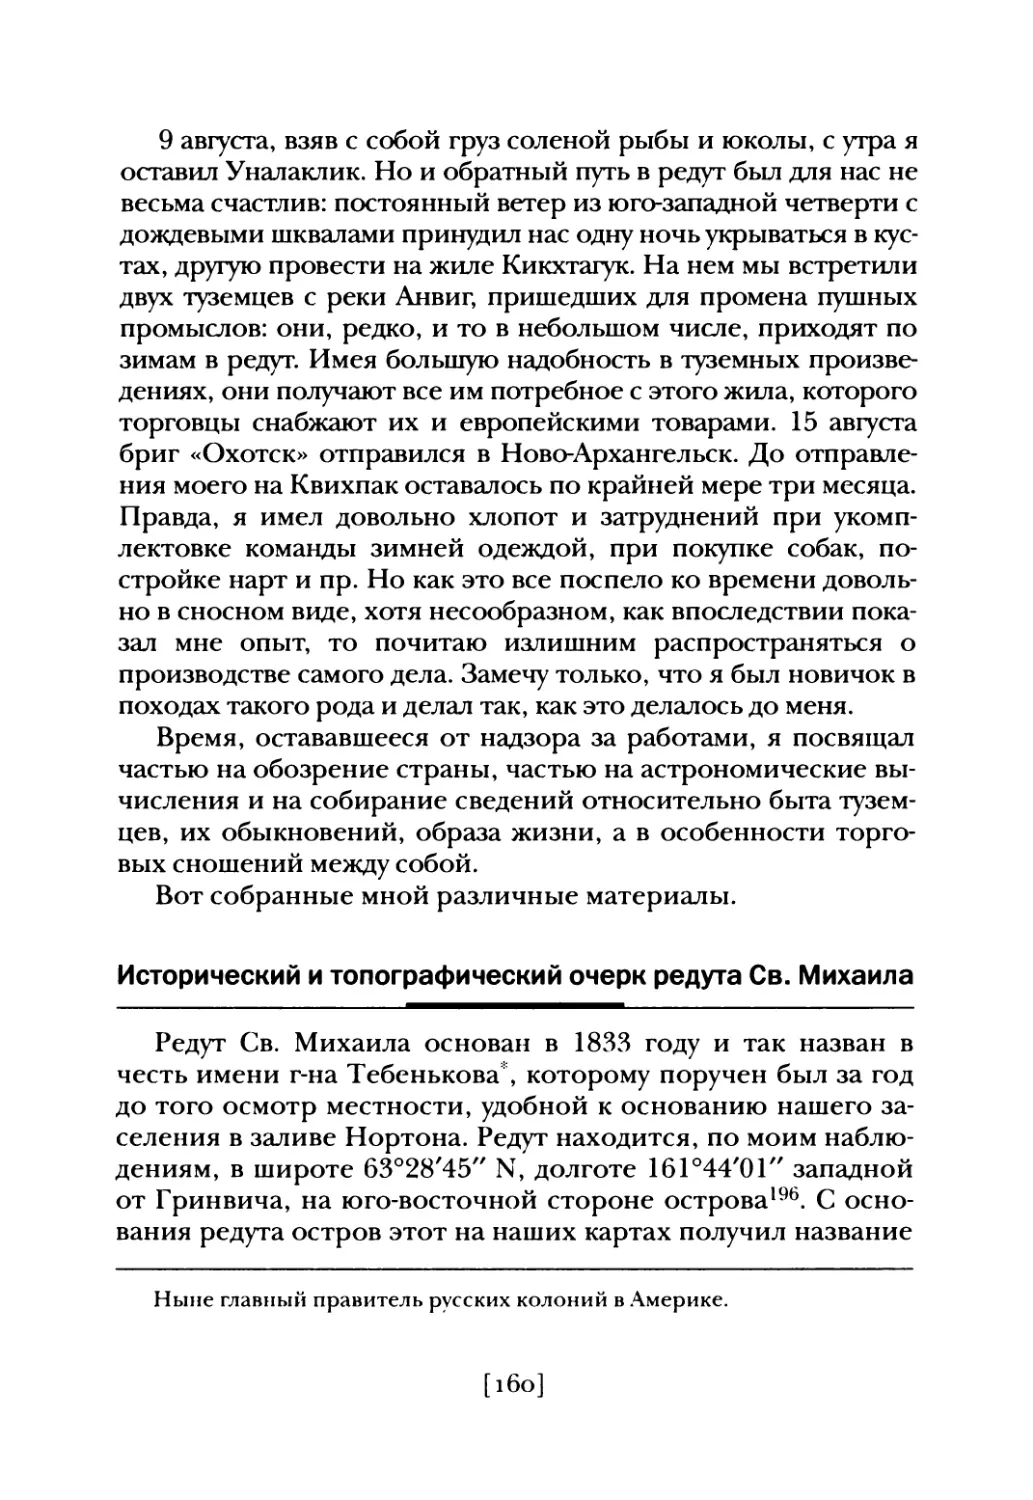 Исторический и топографический очерк редута Св. Михаила